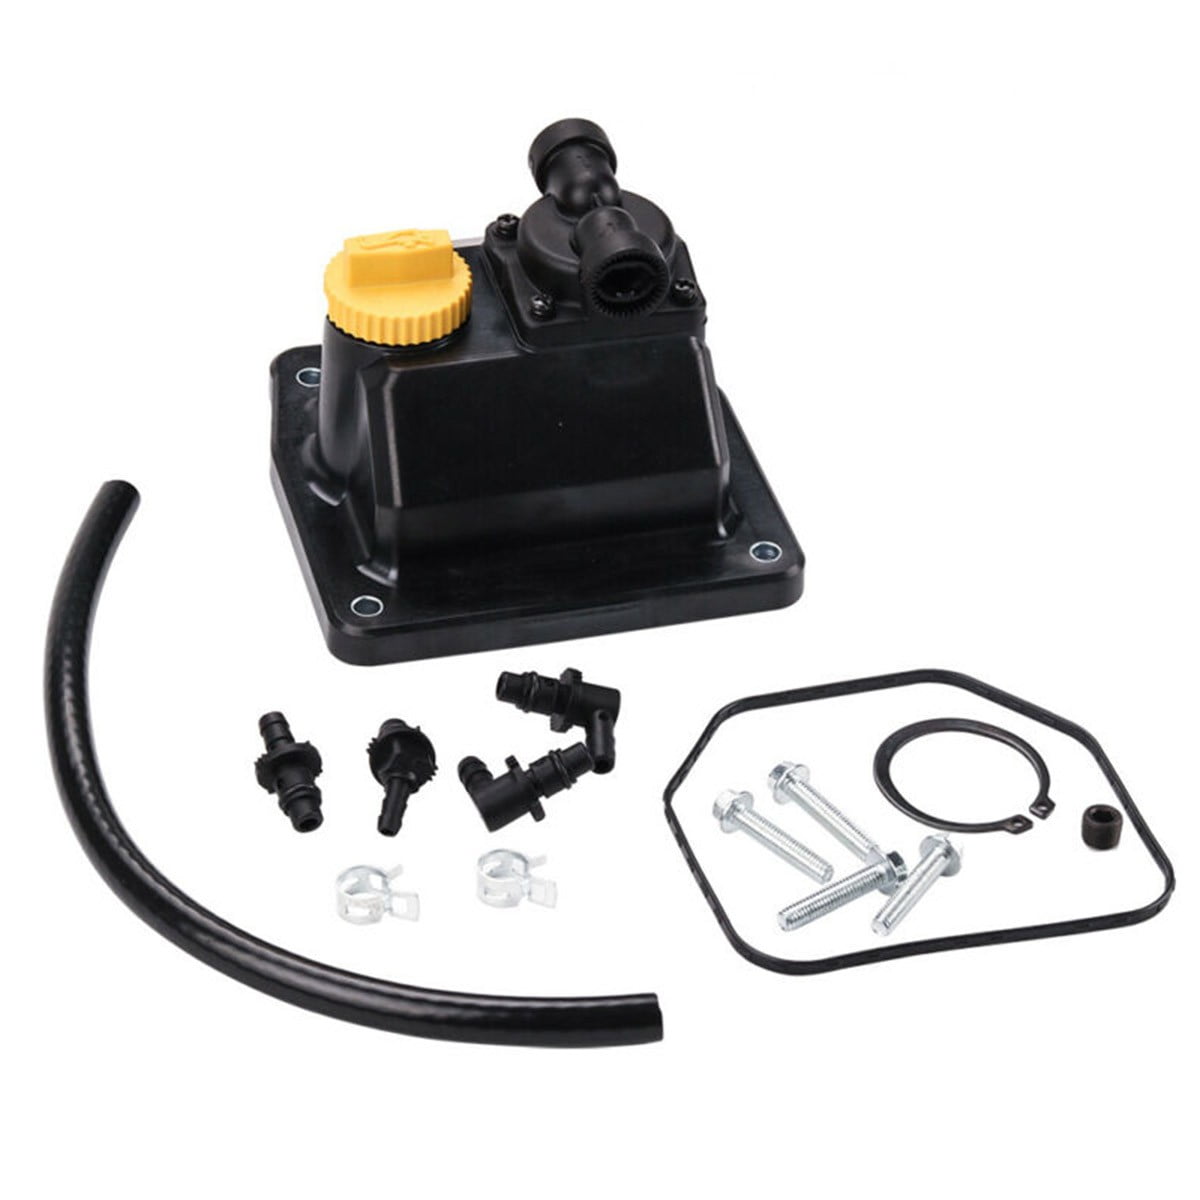 Engine Fuel Pump Kit Fit For Kohler 2455902-S 2439313-S 2455910-S 2439312-S 